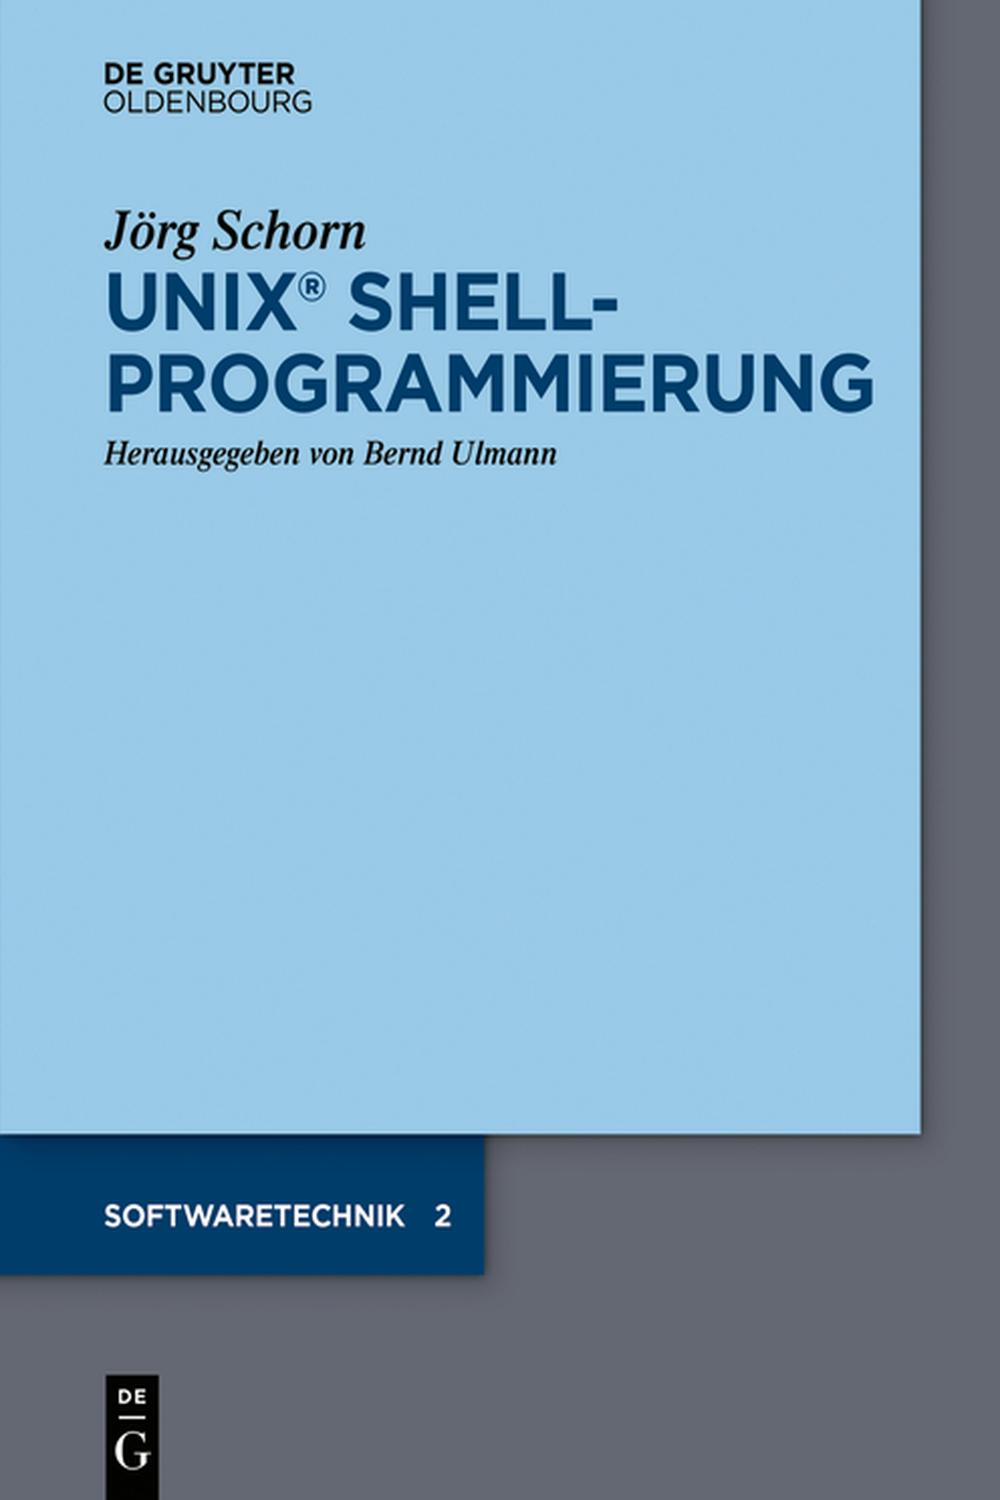 UNIX Shellprogrammierung - Jörg Schorn, Bernd Ulmann